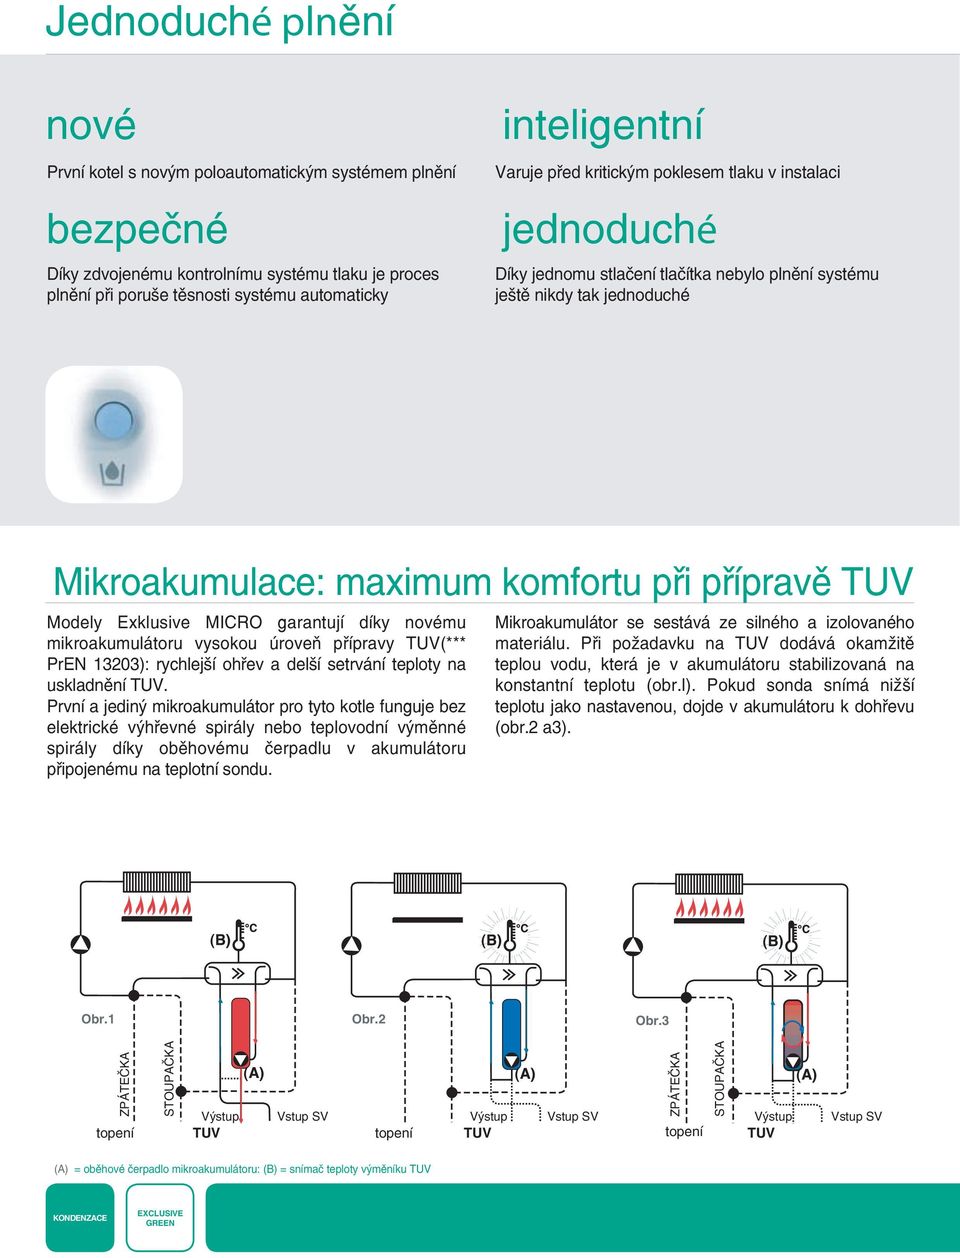 Exklusive MICRO garantují díky novému mikroakumulátoru vysokou úroveň přípravy TUV(*** PrEN 13203): rychlejší ohřev a delší setrvání teploty na uskladnění TUV.